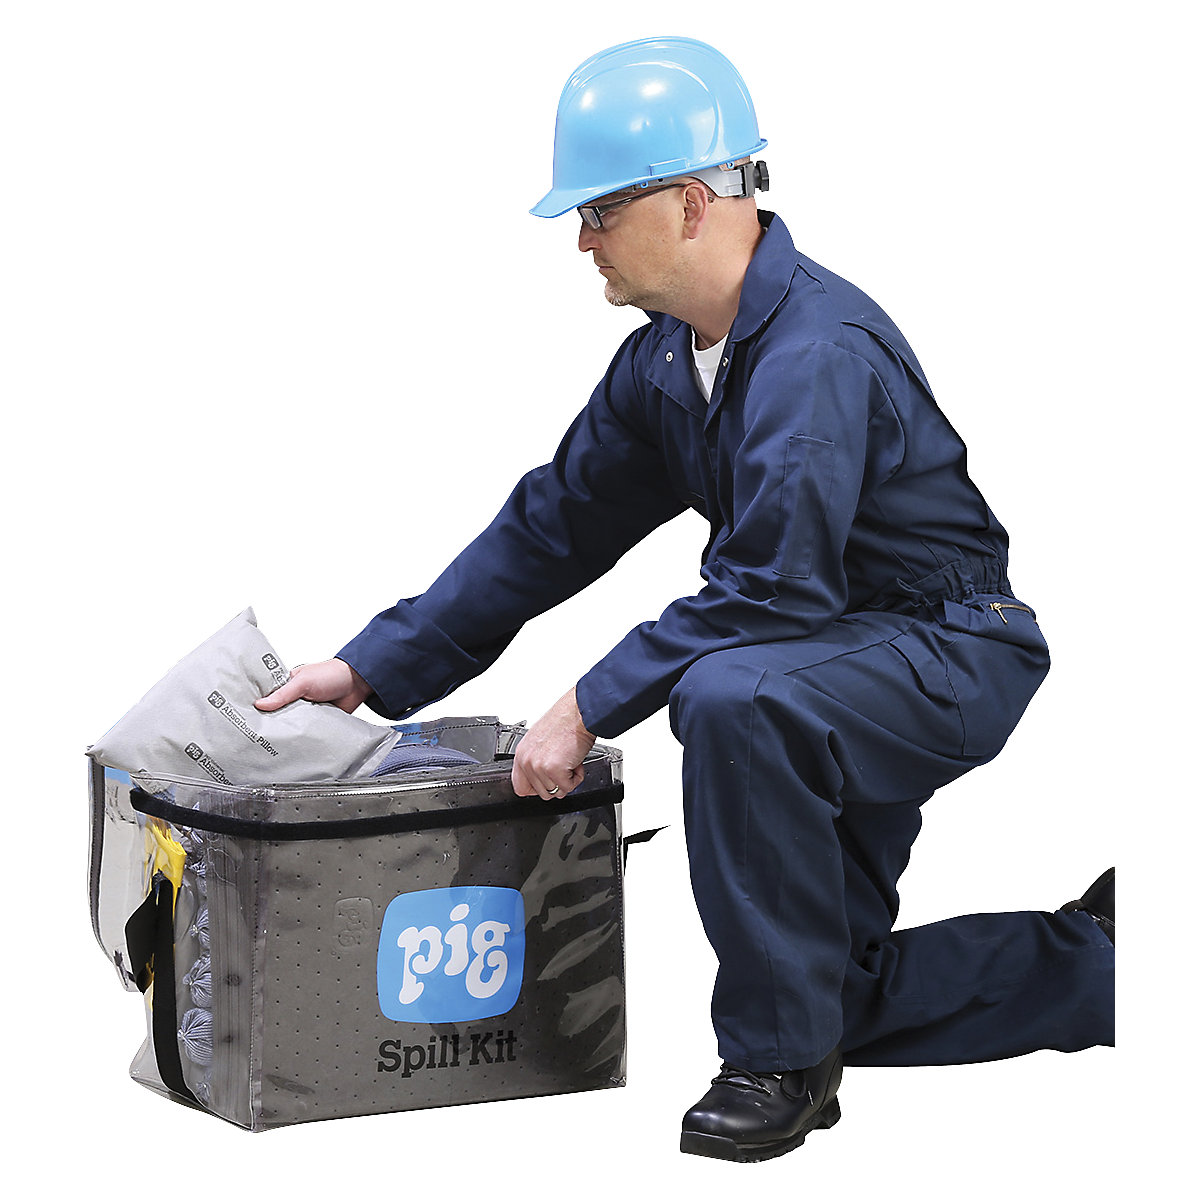 Havarijní souprava v průhledné tašce – PIG (Obrázek výrobku 3)-2